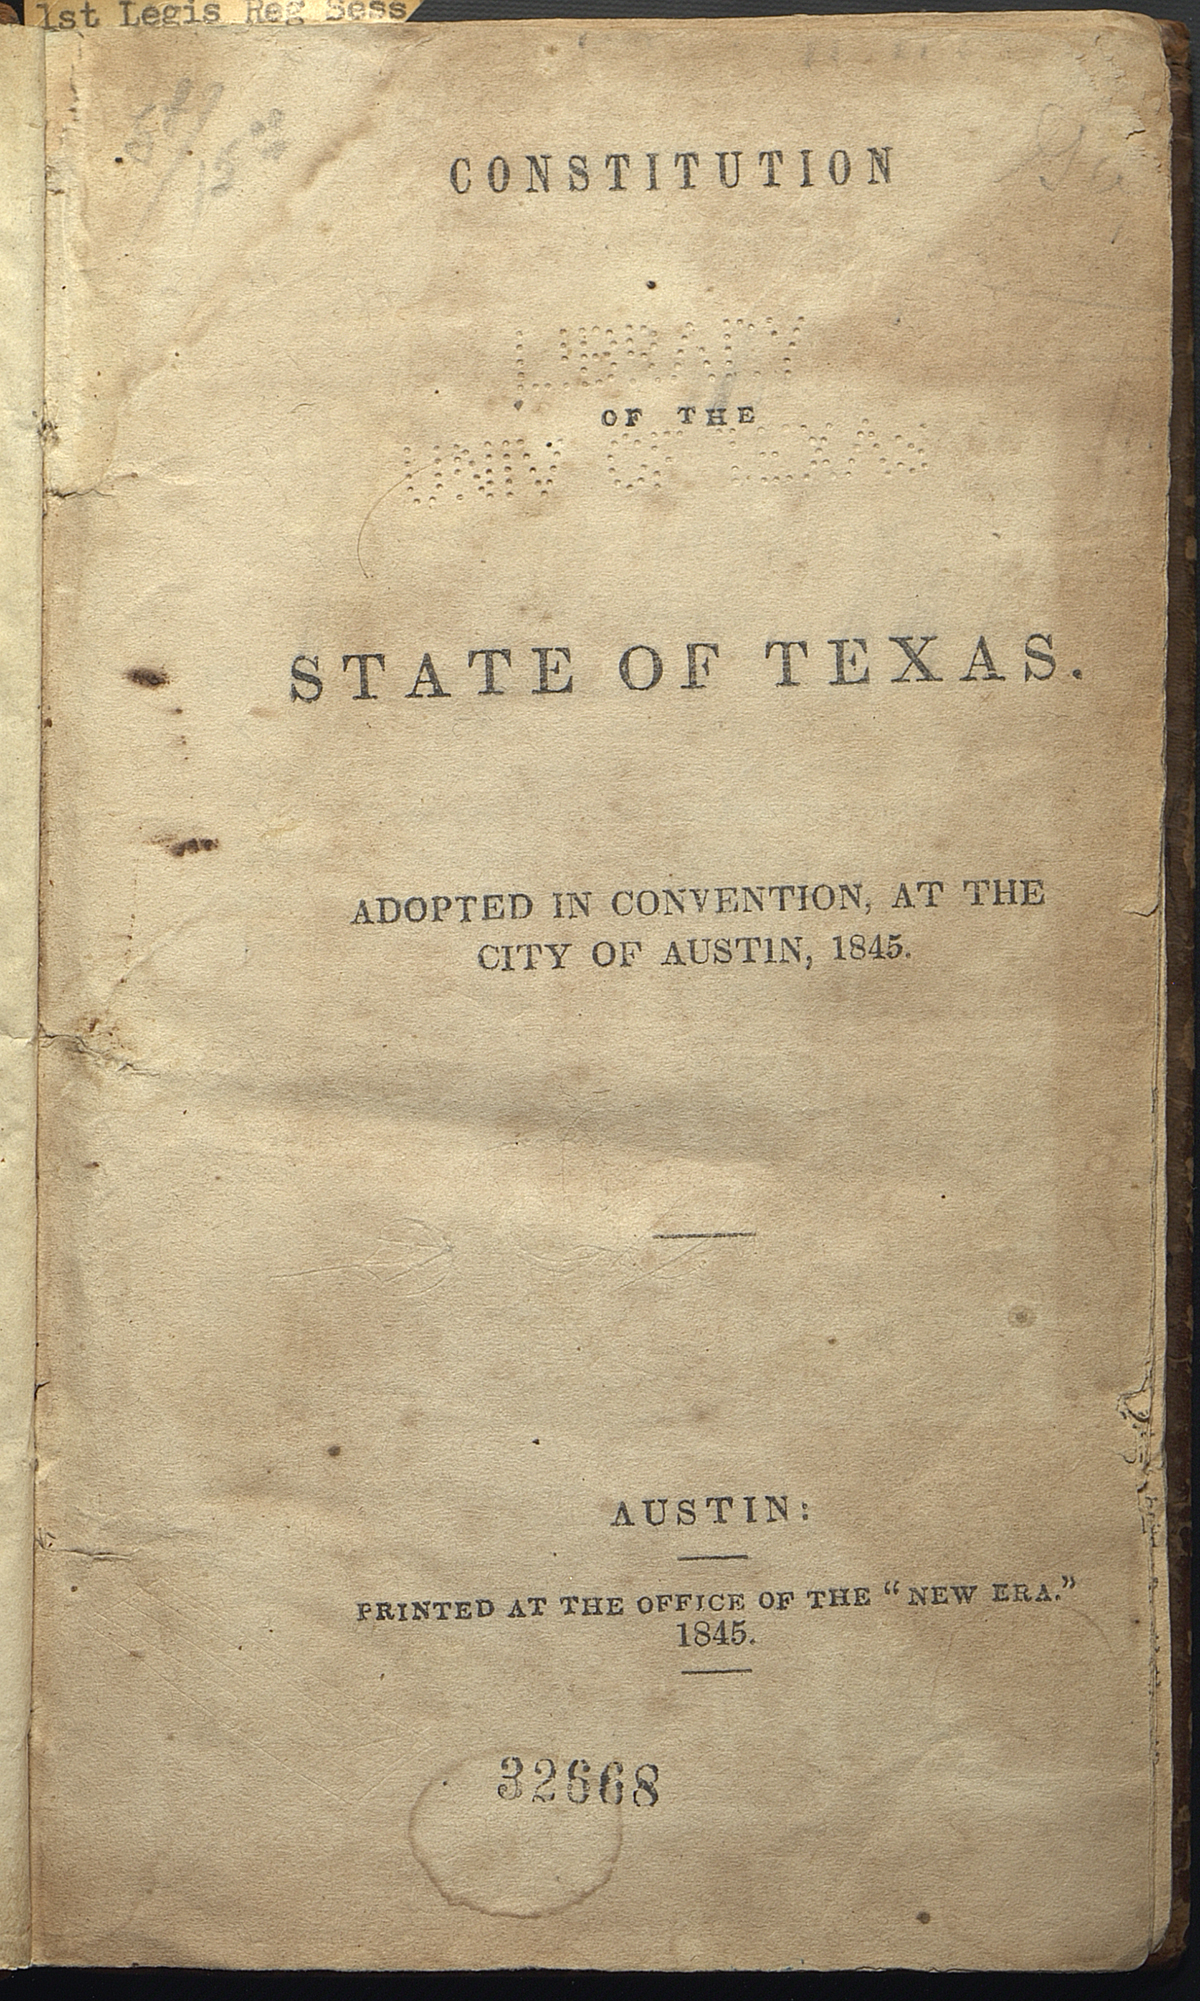 Texas Constitution of 1845